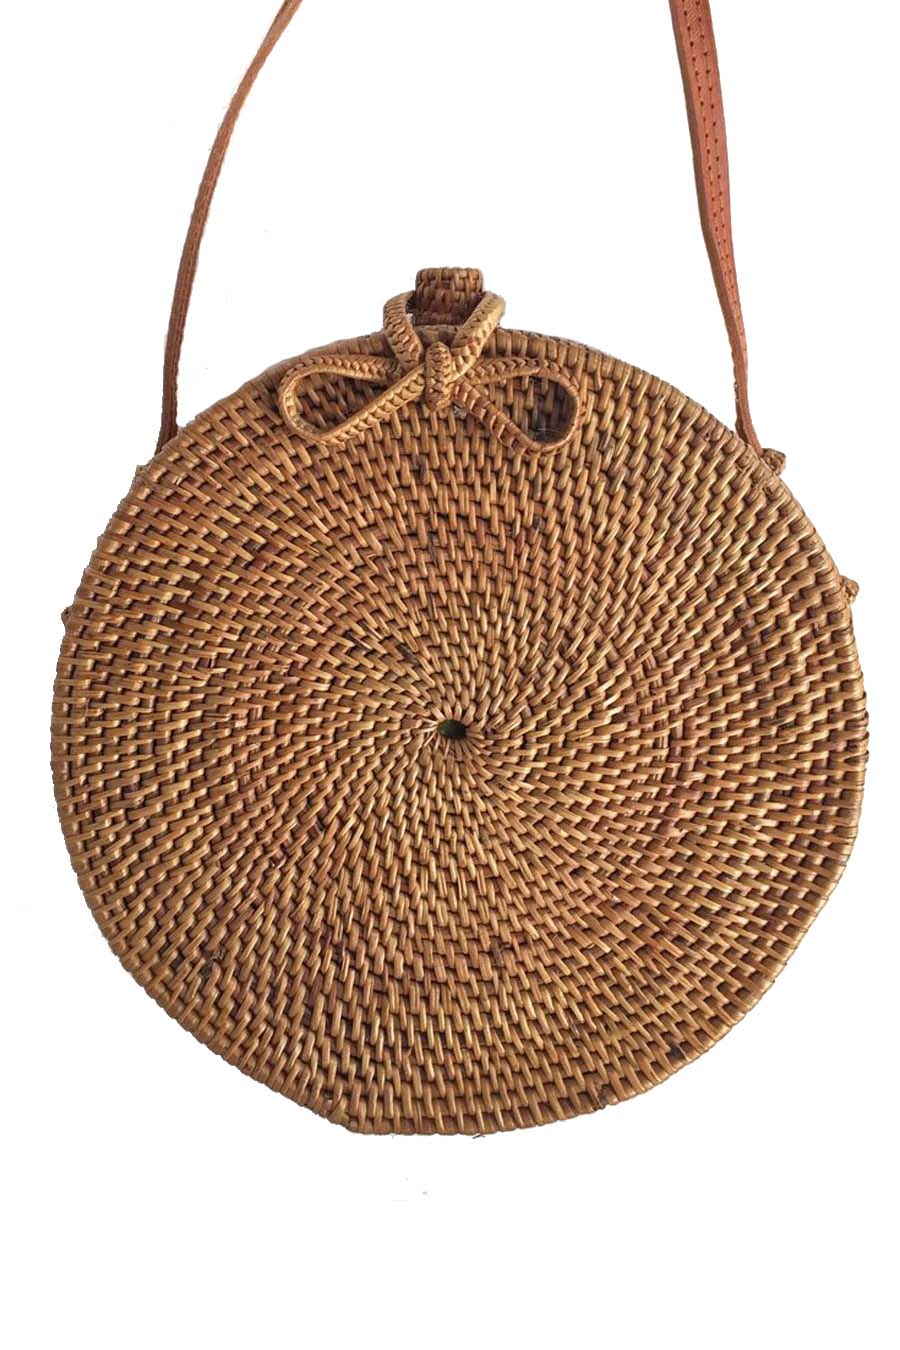 Black Round Woven Bamboo Shoulder Bag or Handbag - Pitch Black | NOVICA